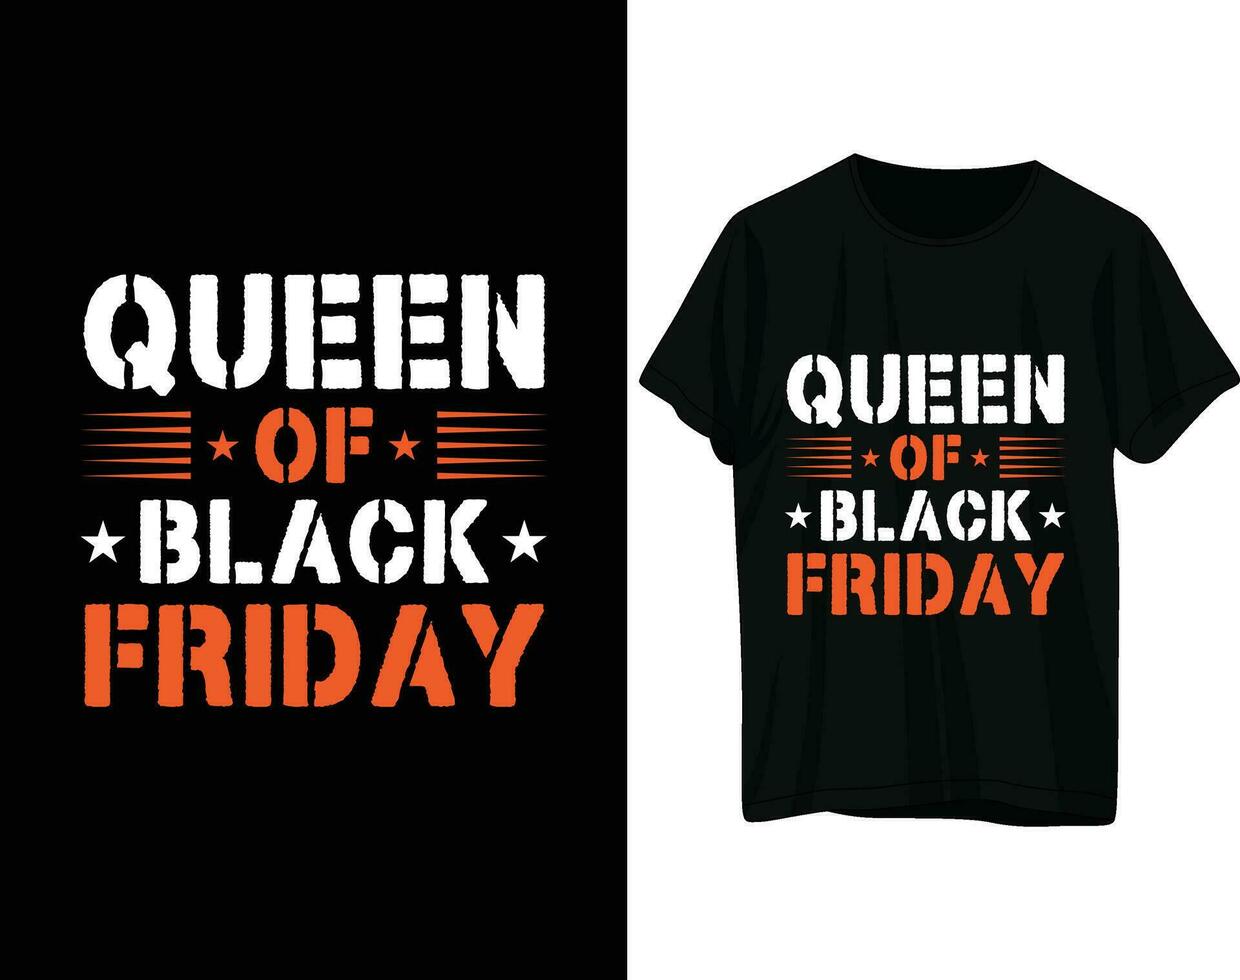 Queen of black friday tshirt design vector